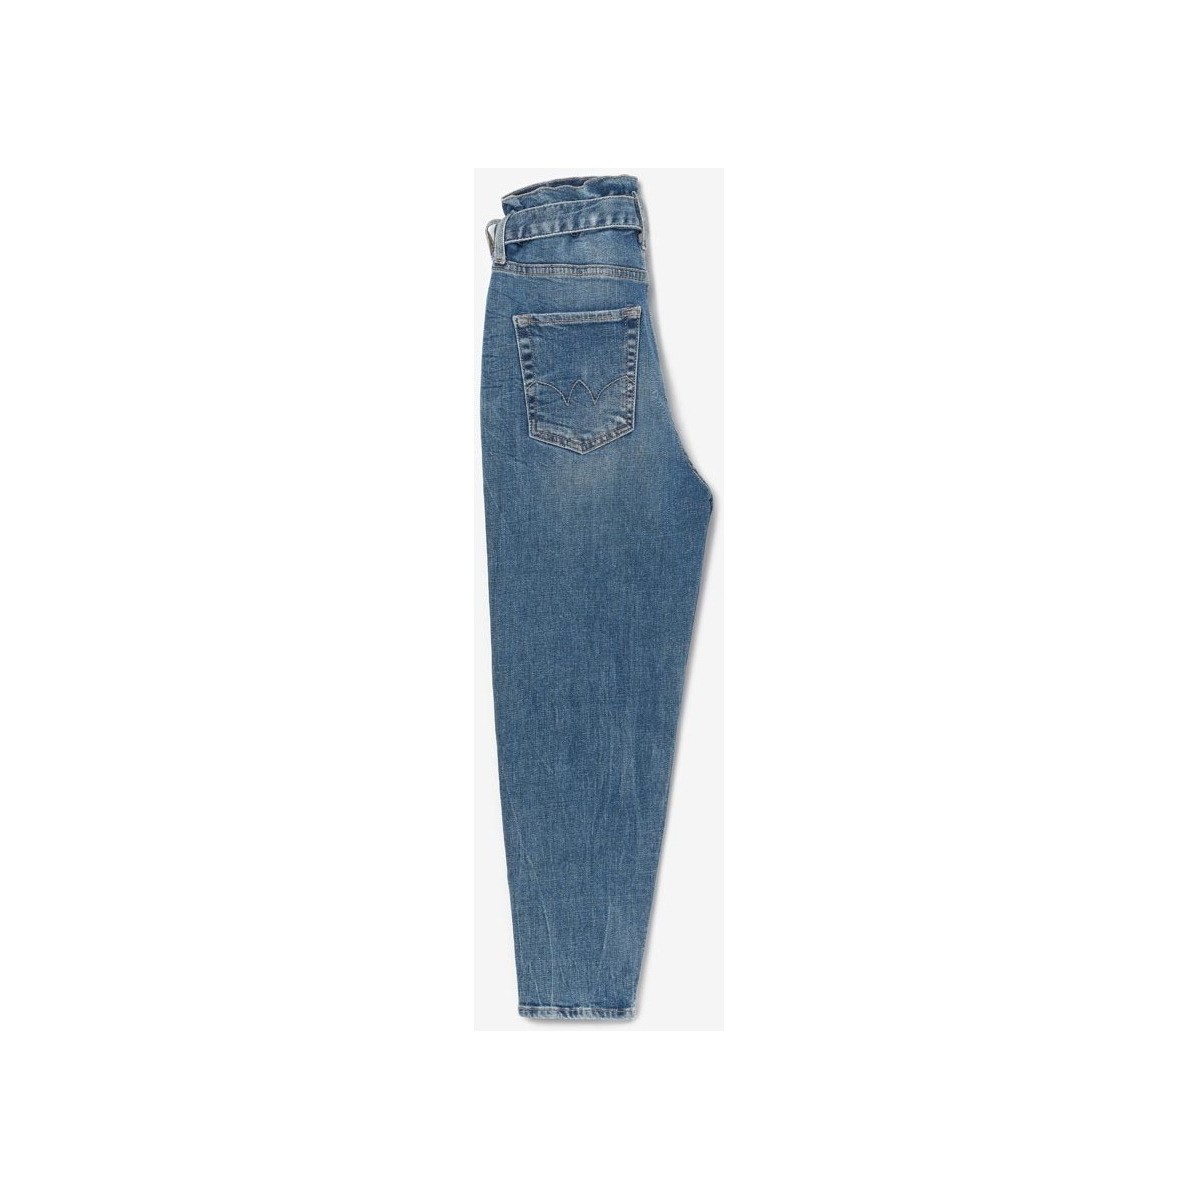 Le Temps des Cerises Bleu Milina boyfit jeans vintage bleu BLN6NRiF